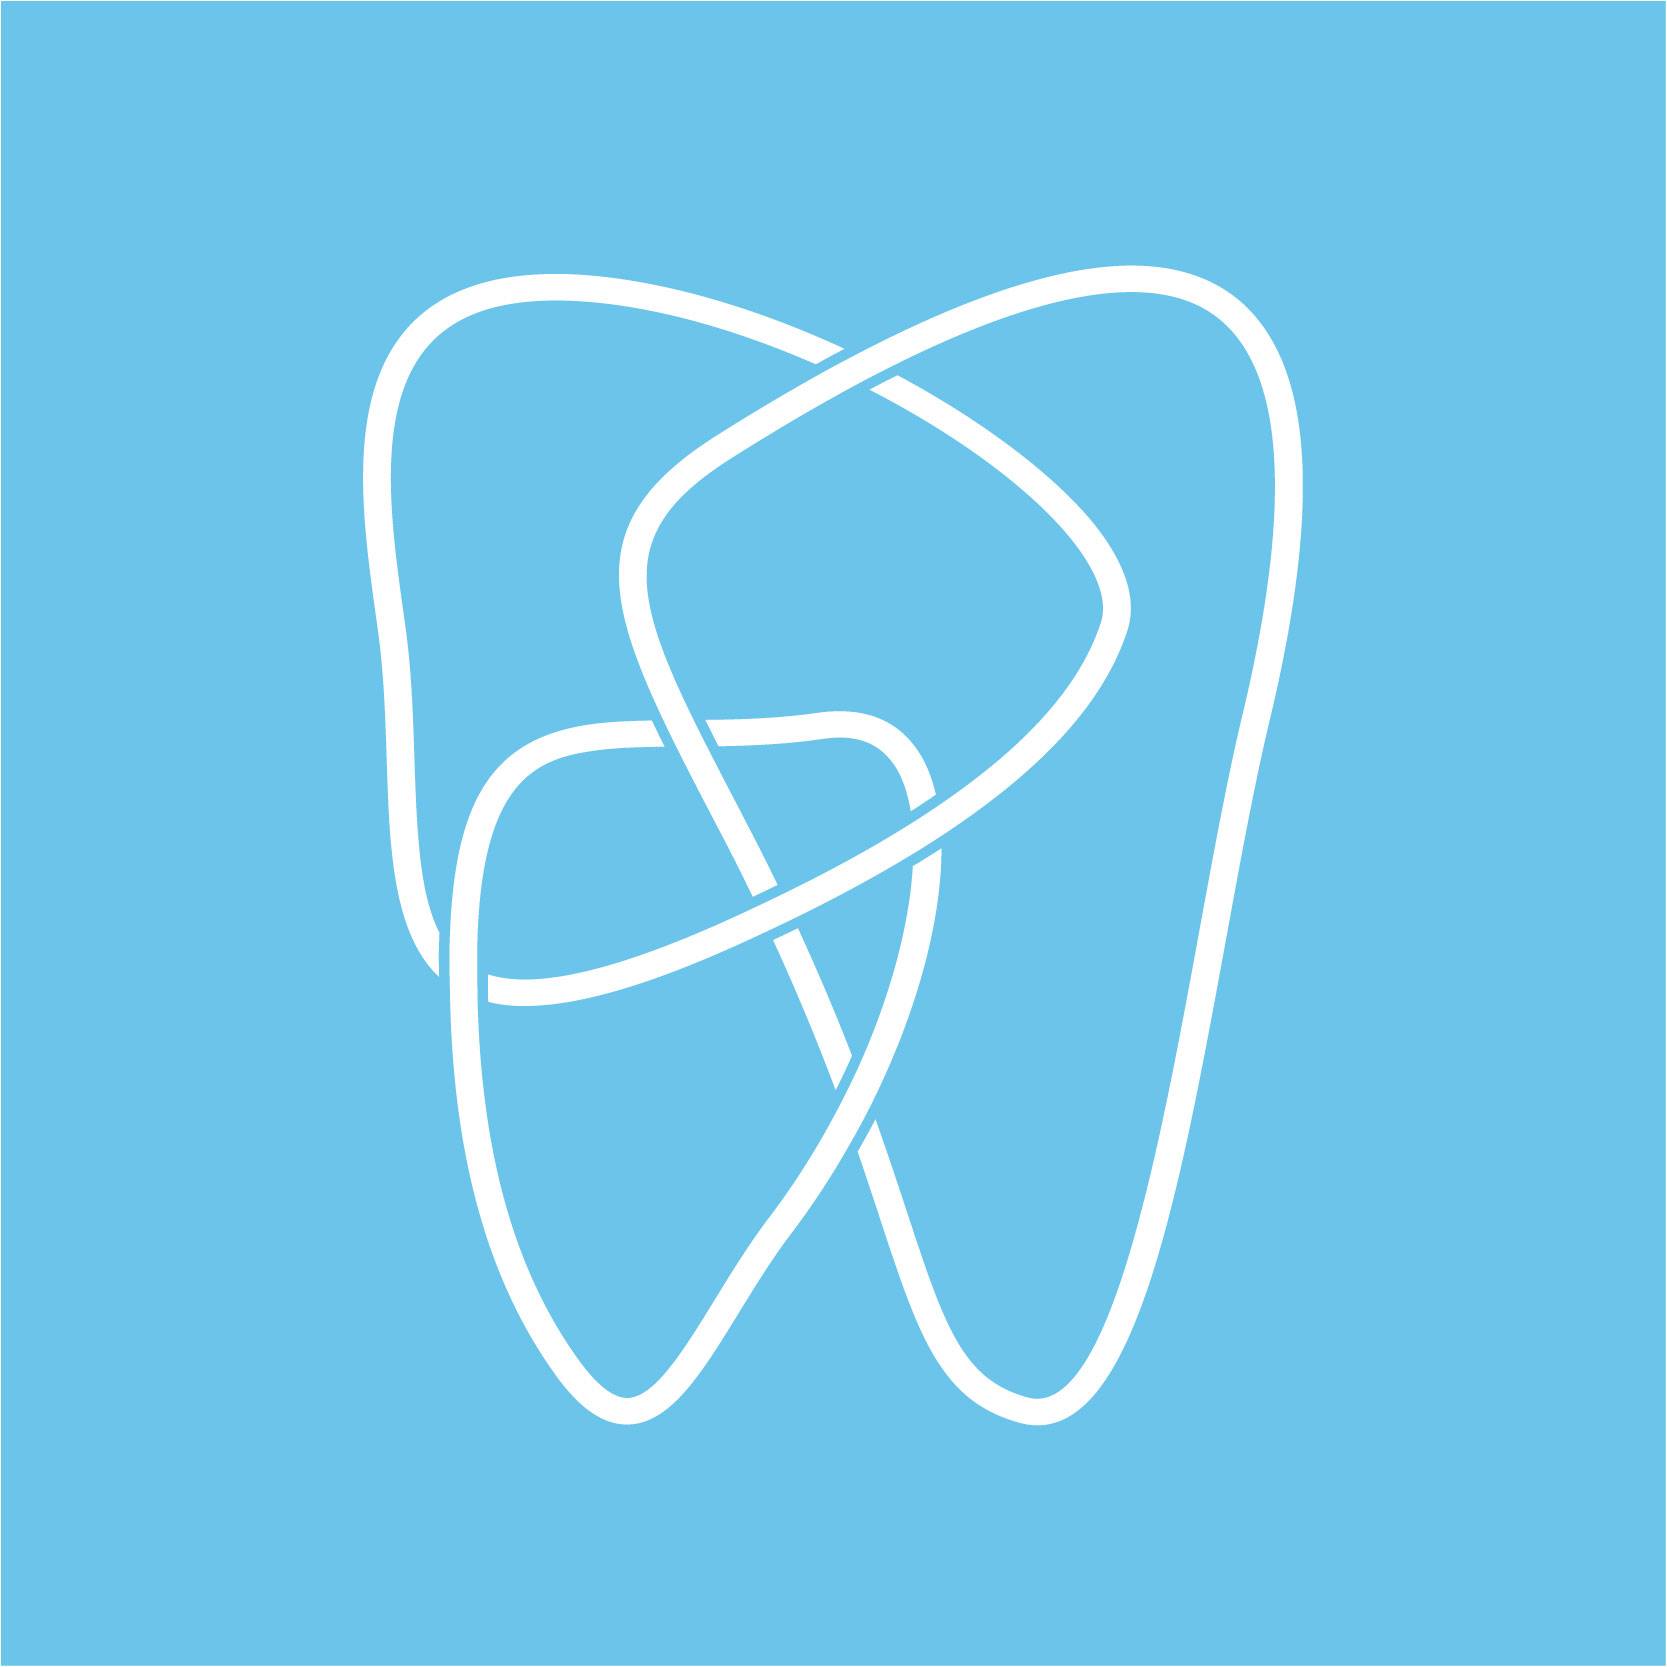 Company logo of Rock Family Dental